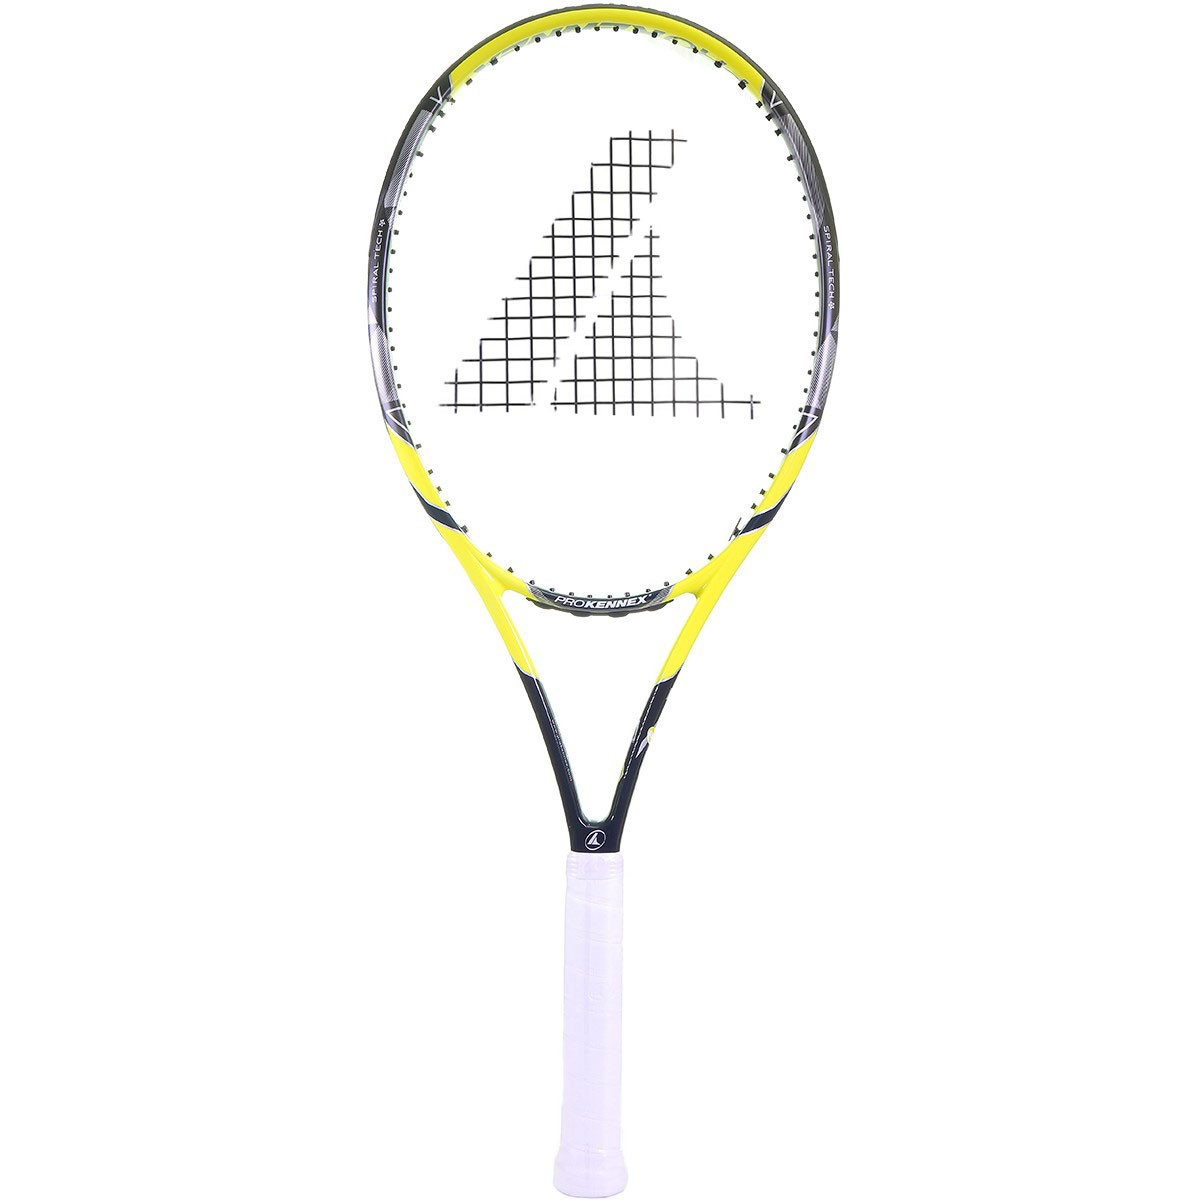 2018 Tennis Racquet ProKennex Ki 5 300g Authorized Dealer w/ Warranty 